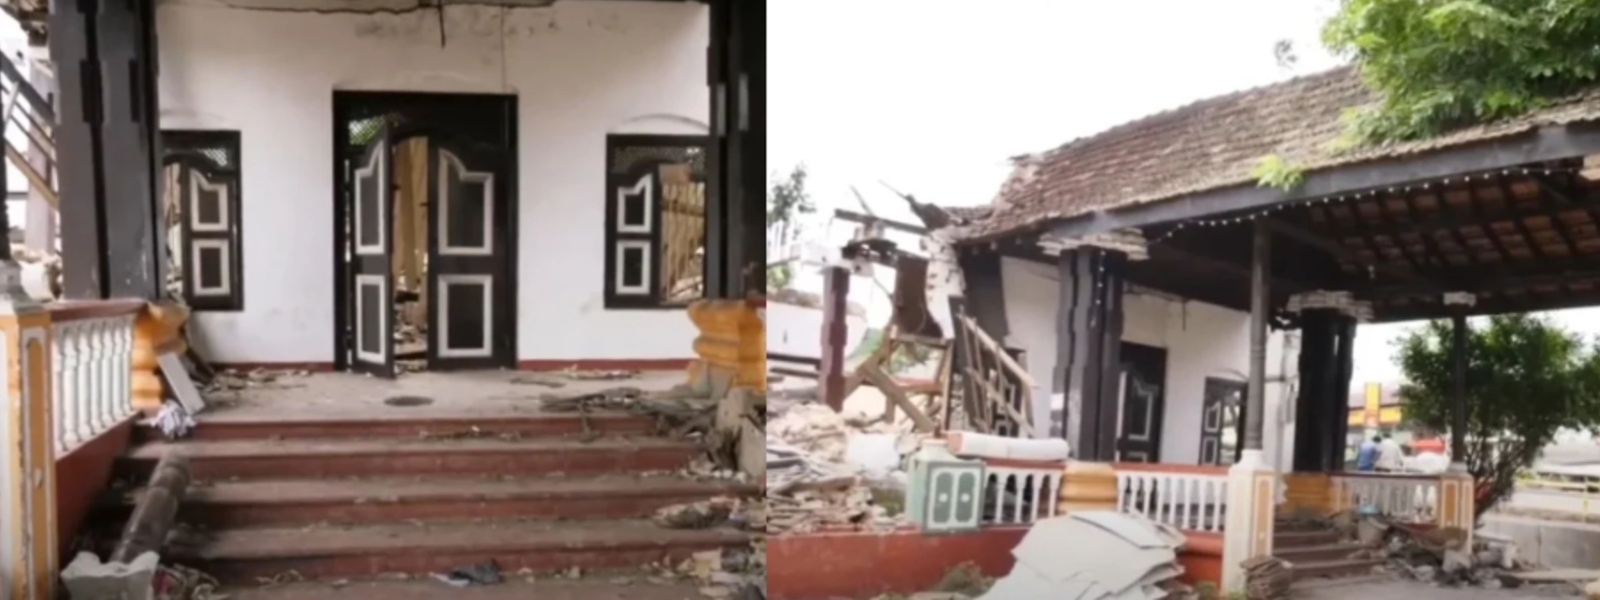 Kurunegala MC prohibits entry to demolished archaeological site